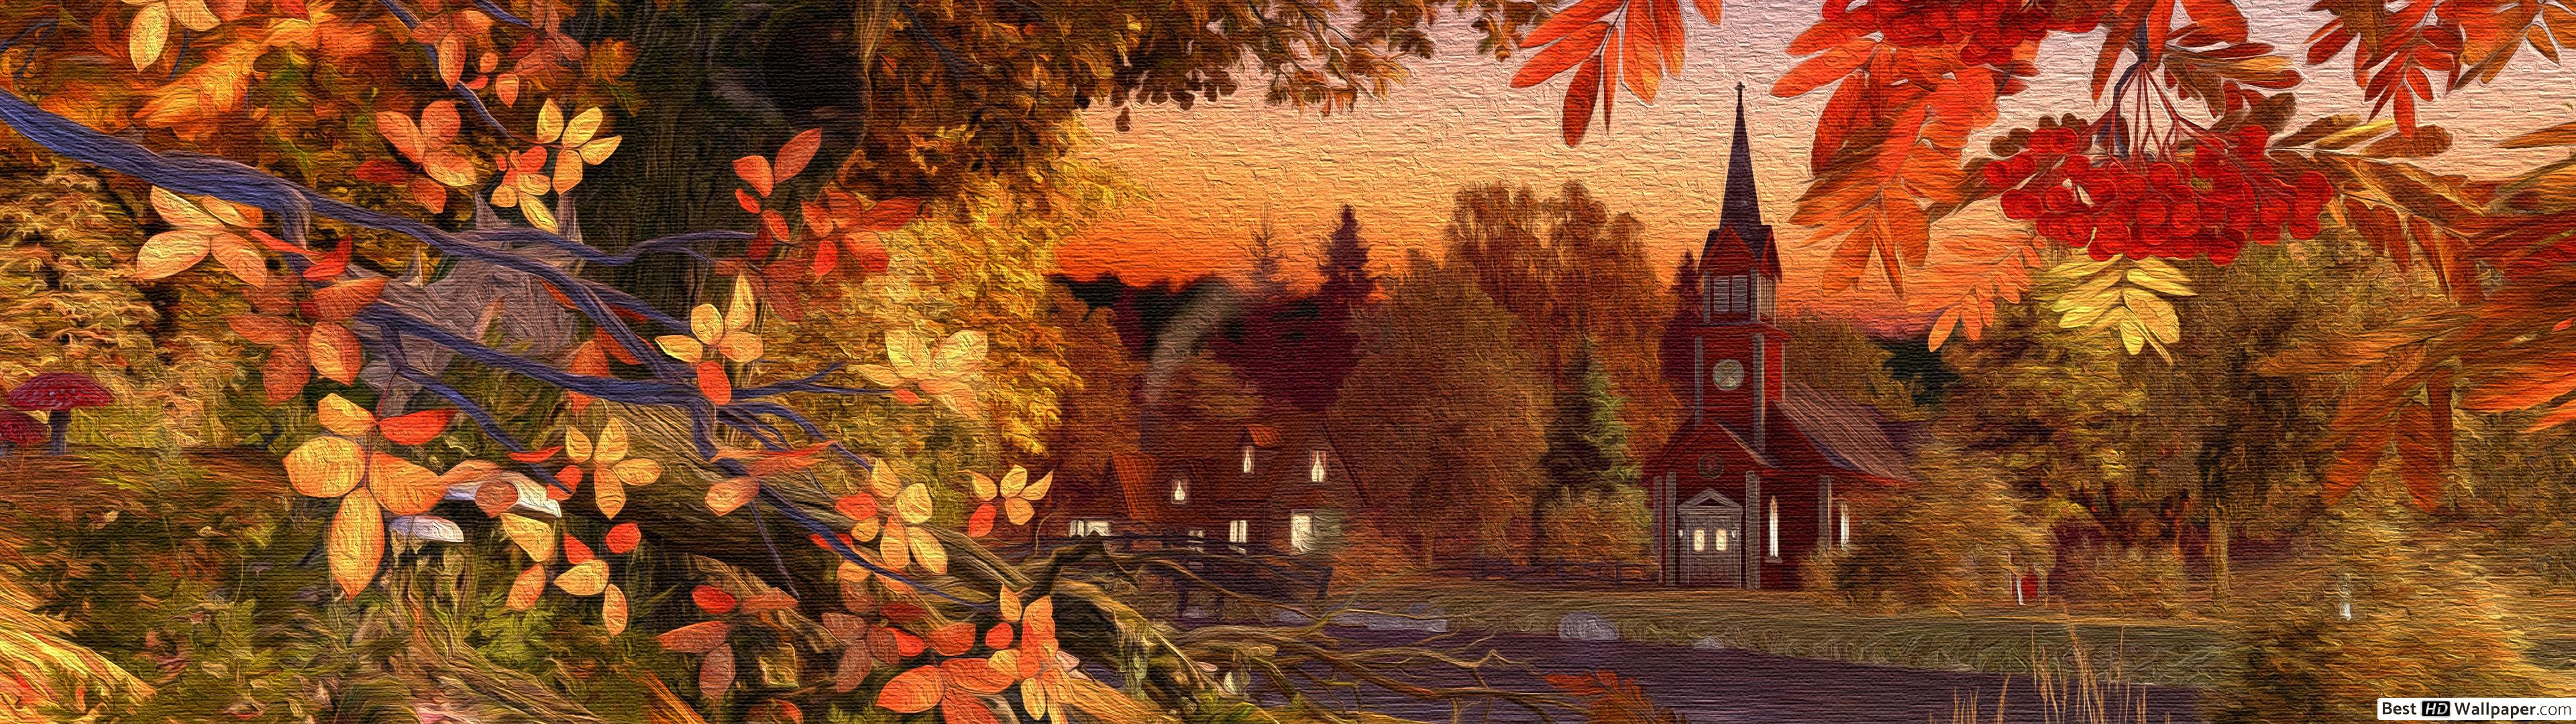 Autumn Wallpaper Free 3840 X 1080 Autumn Background